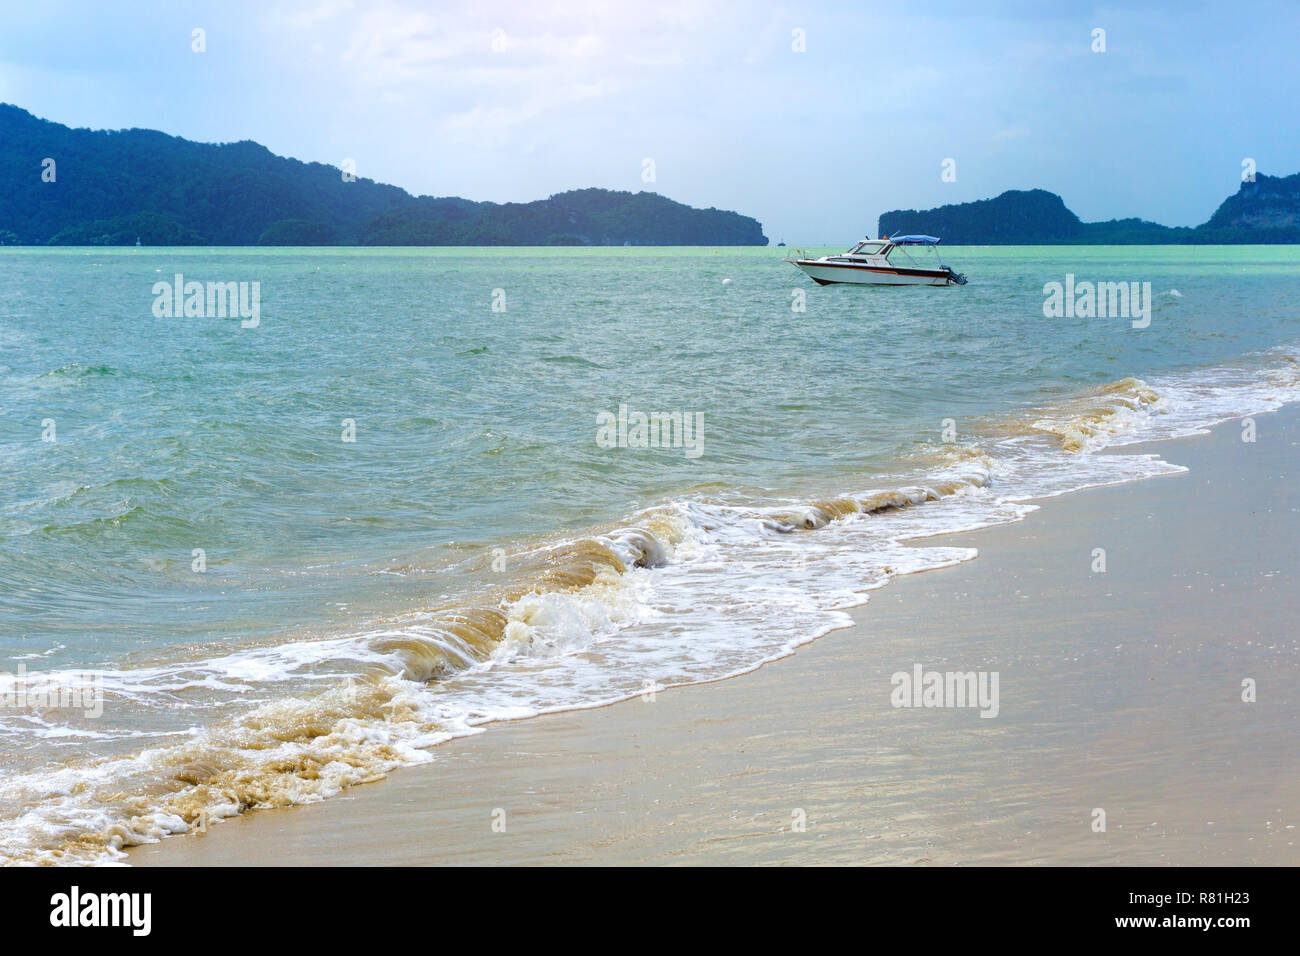 Bateau sur l'eau bleue et plage de sable blanc dans la mer en Thaïlande, province de Phang Nga. Banque D'Images